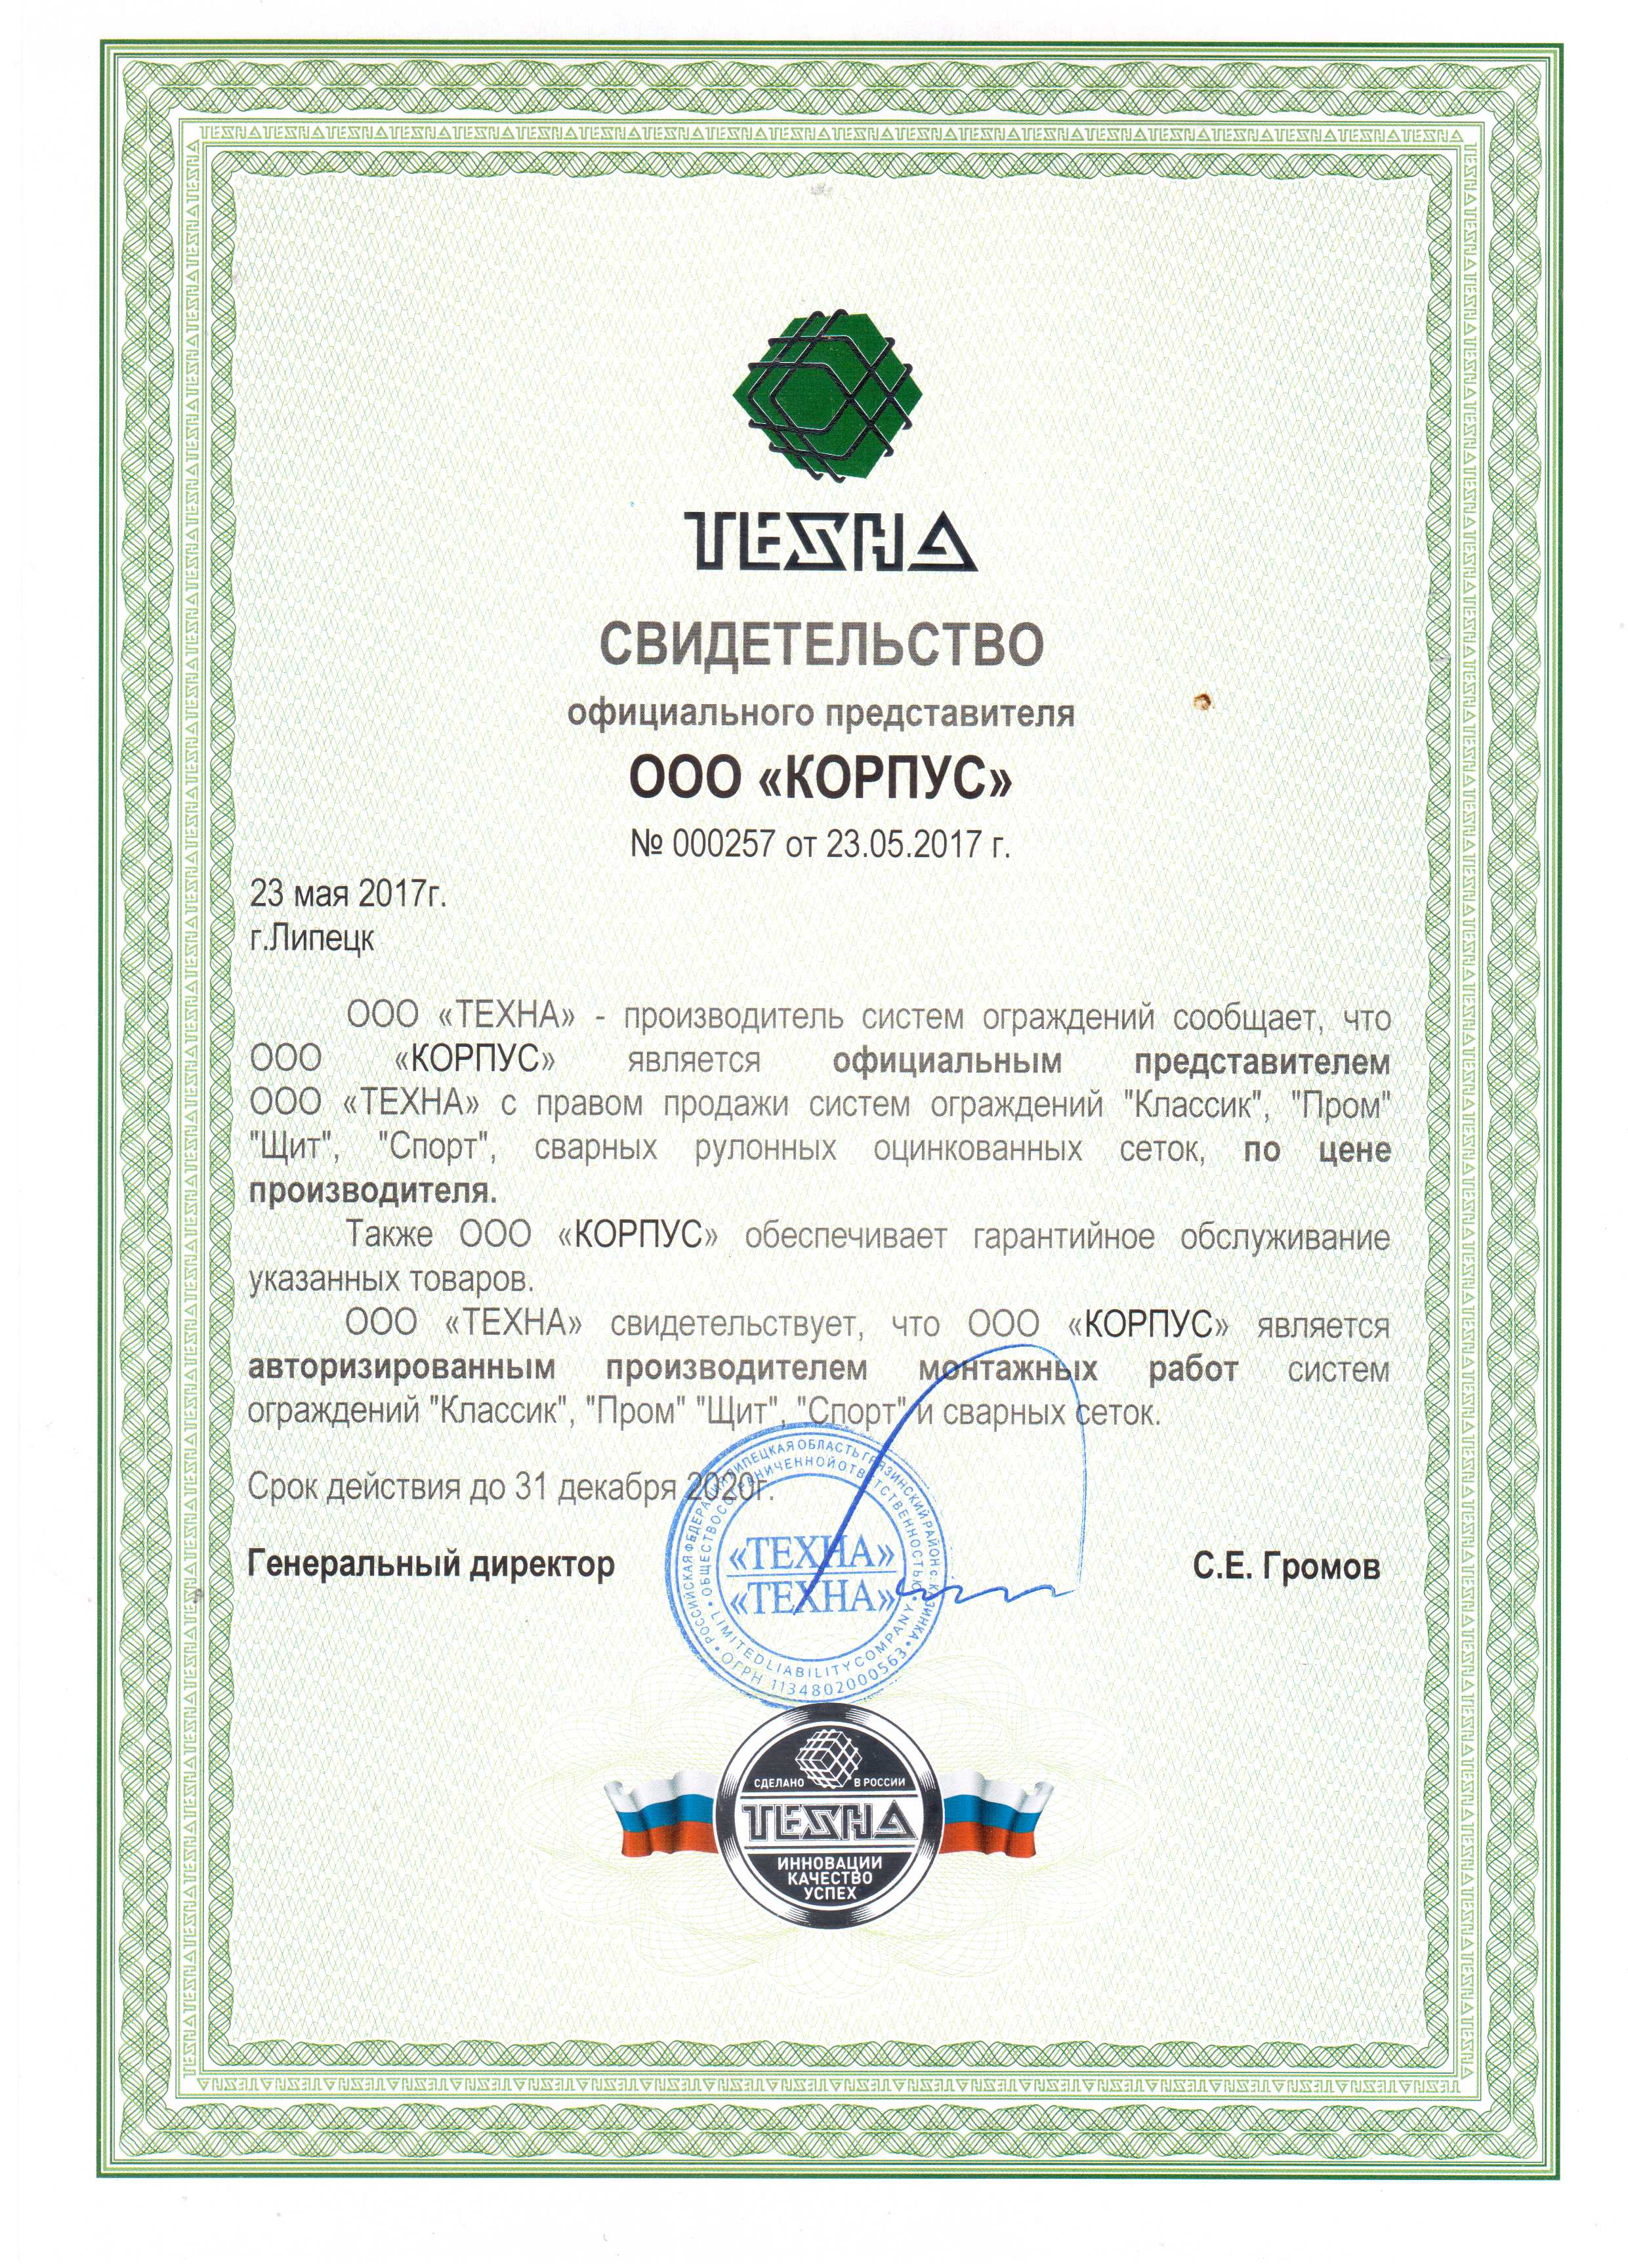 сертикат от завода Техна для ООО "Корпус"